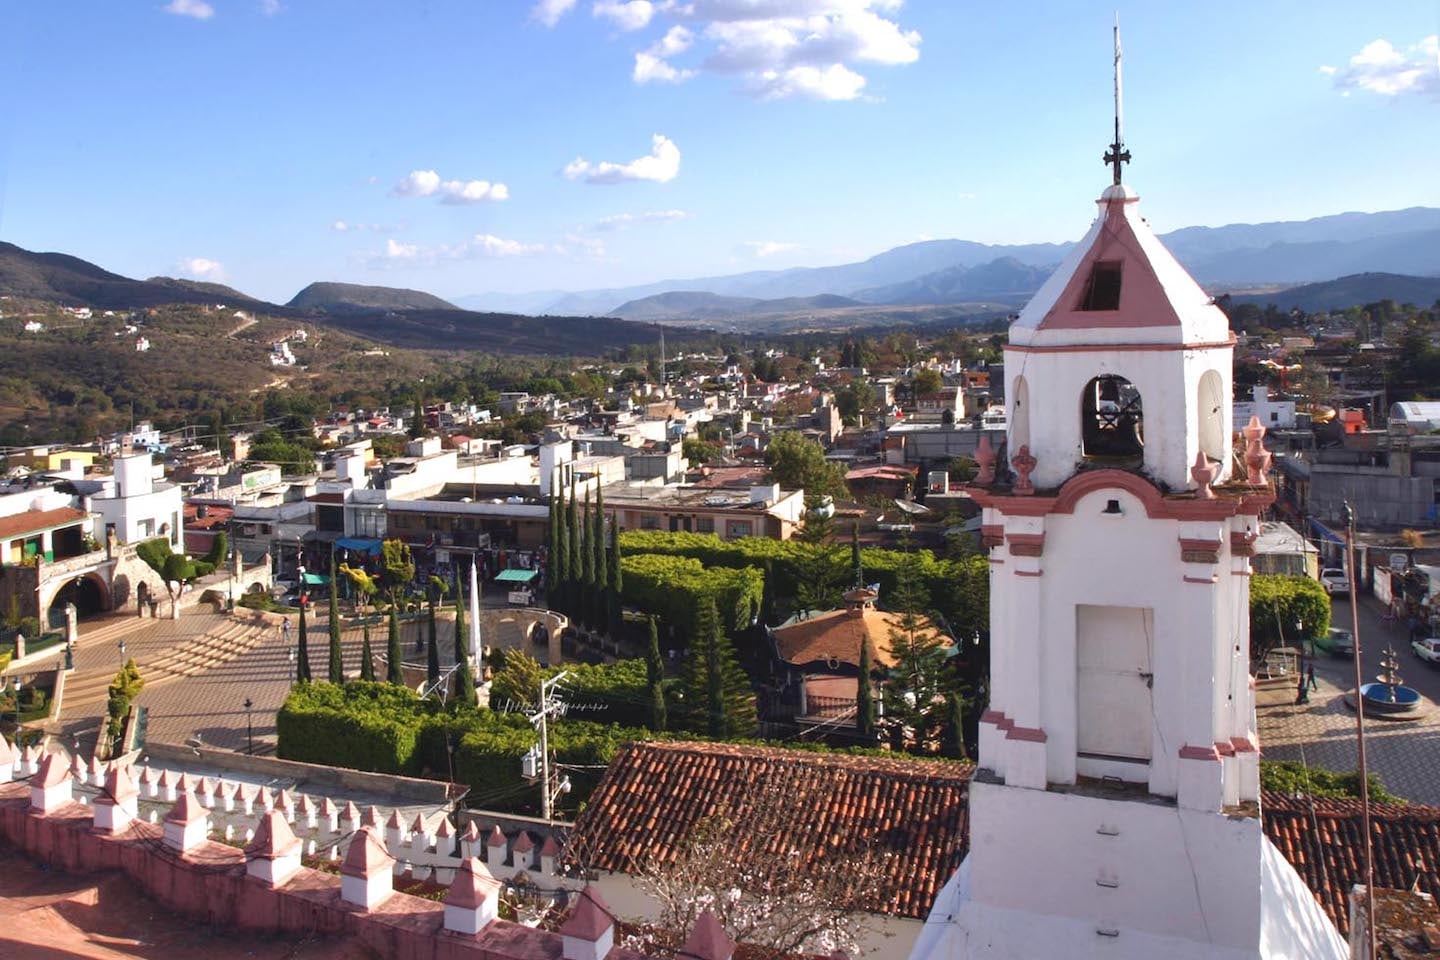 Ixtapan de la Sal Pueblo Magico church and plaza